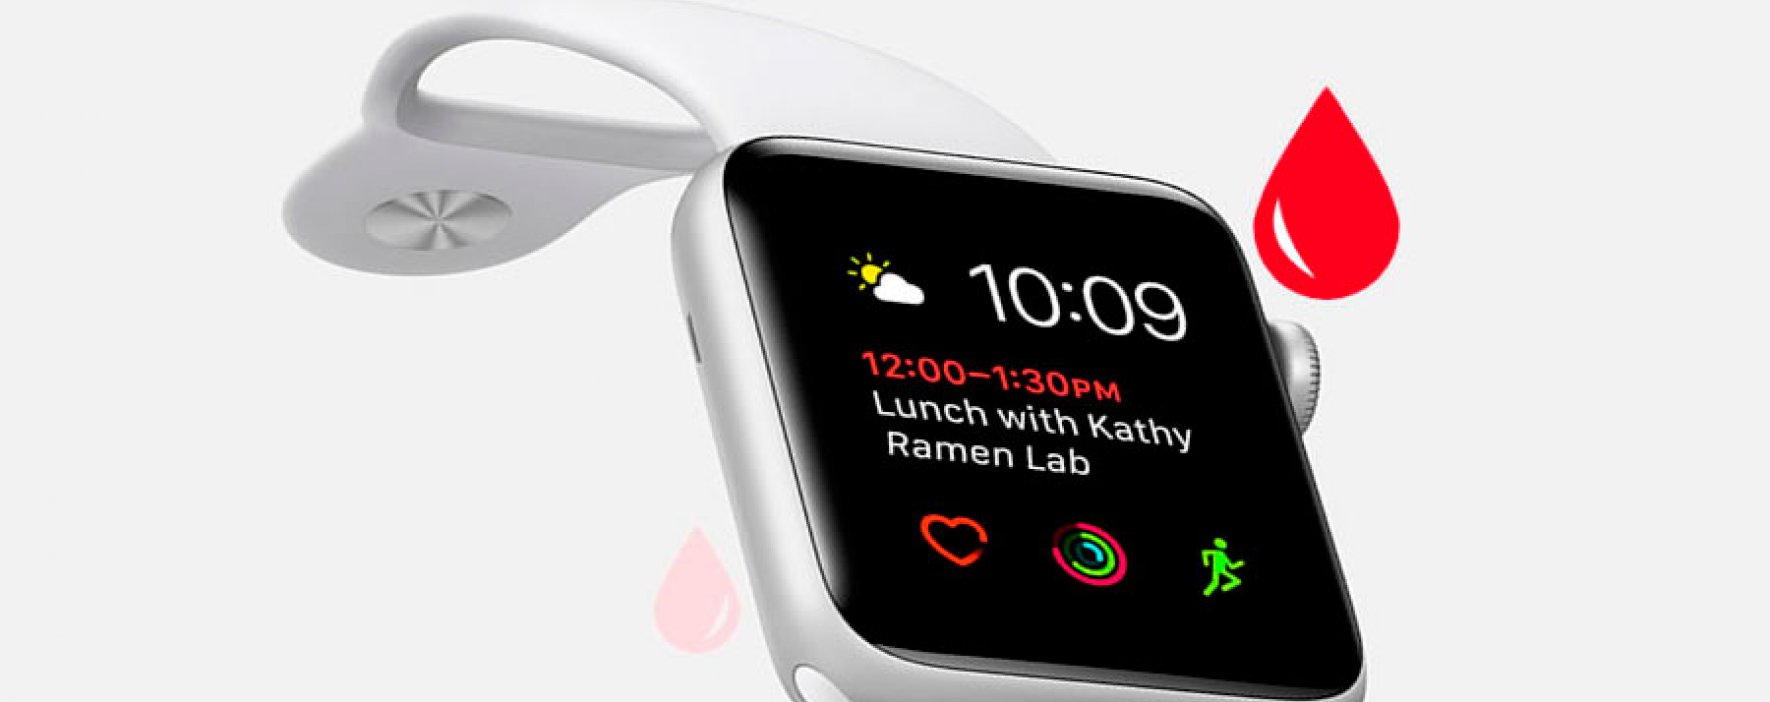 Los futuros Apple Watch podrían mostrar los niveles de glucosa en la sangre